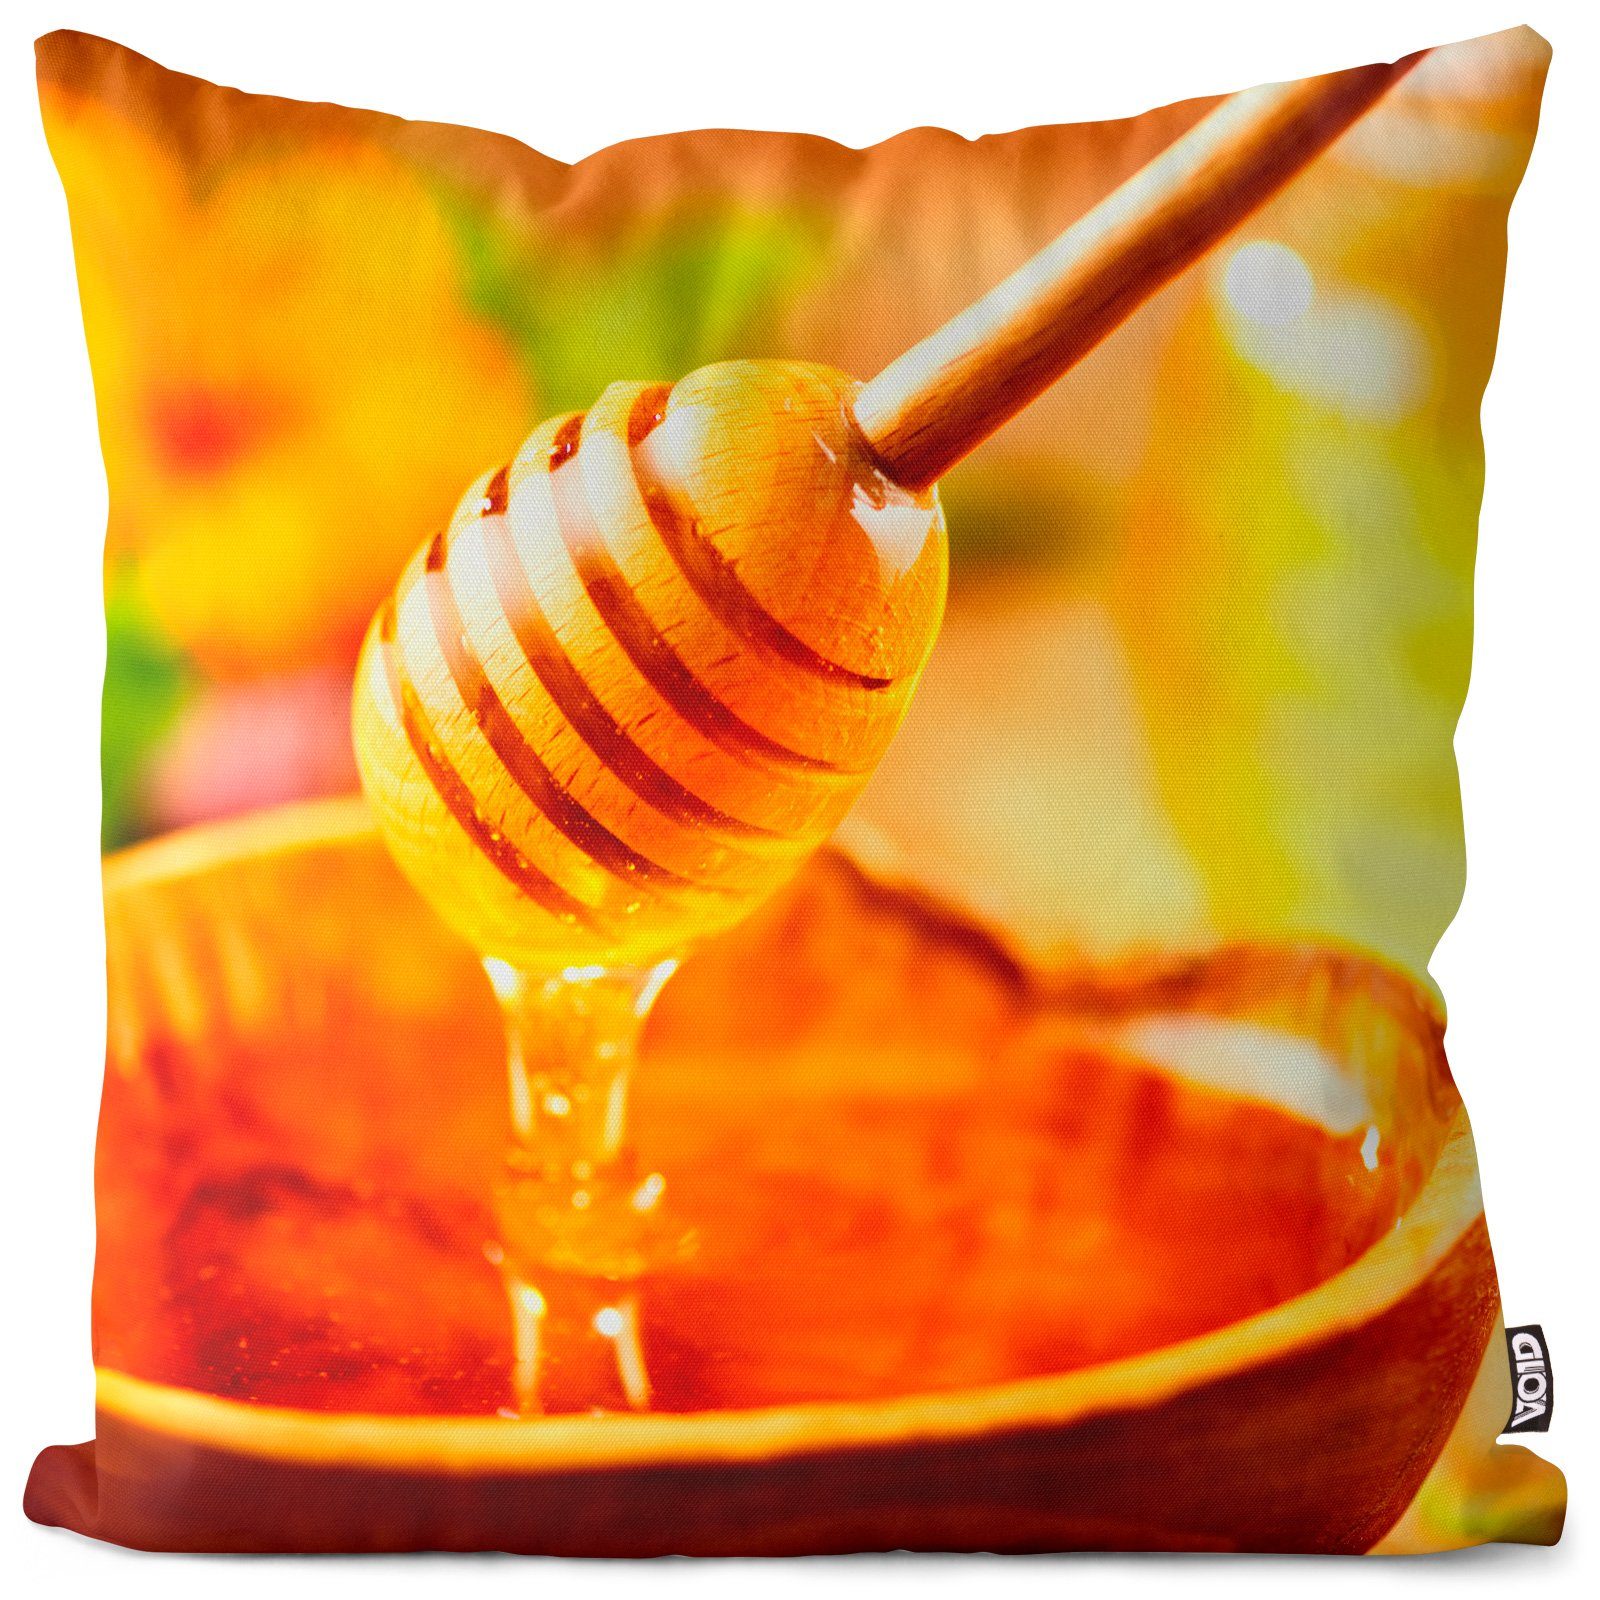 Wabe Bienenstock Essen Zucker Kissenbezug, (1 Aufstrich Züchter Blütenhonig Biene Sofa-Kissen gesund Stück), einkaufen Honig Anbau VOID Frühstück Kochen Sommer